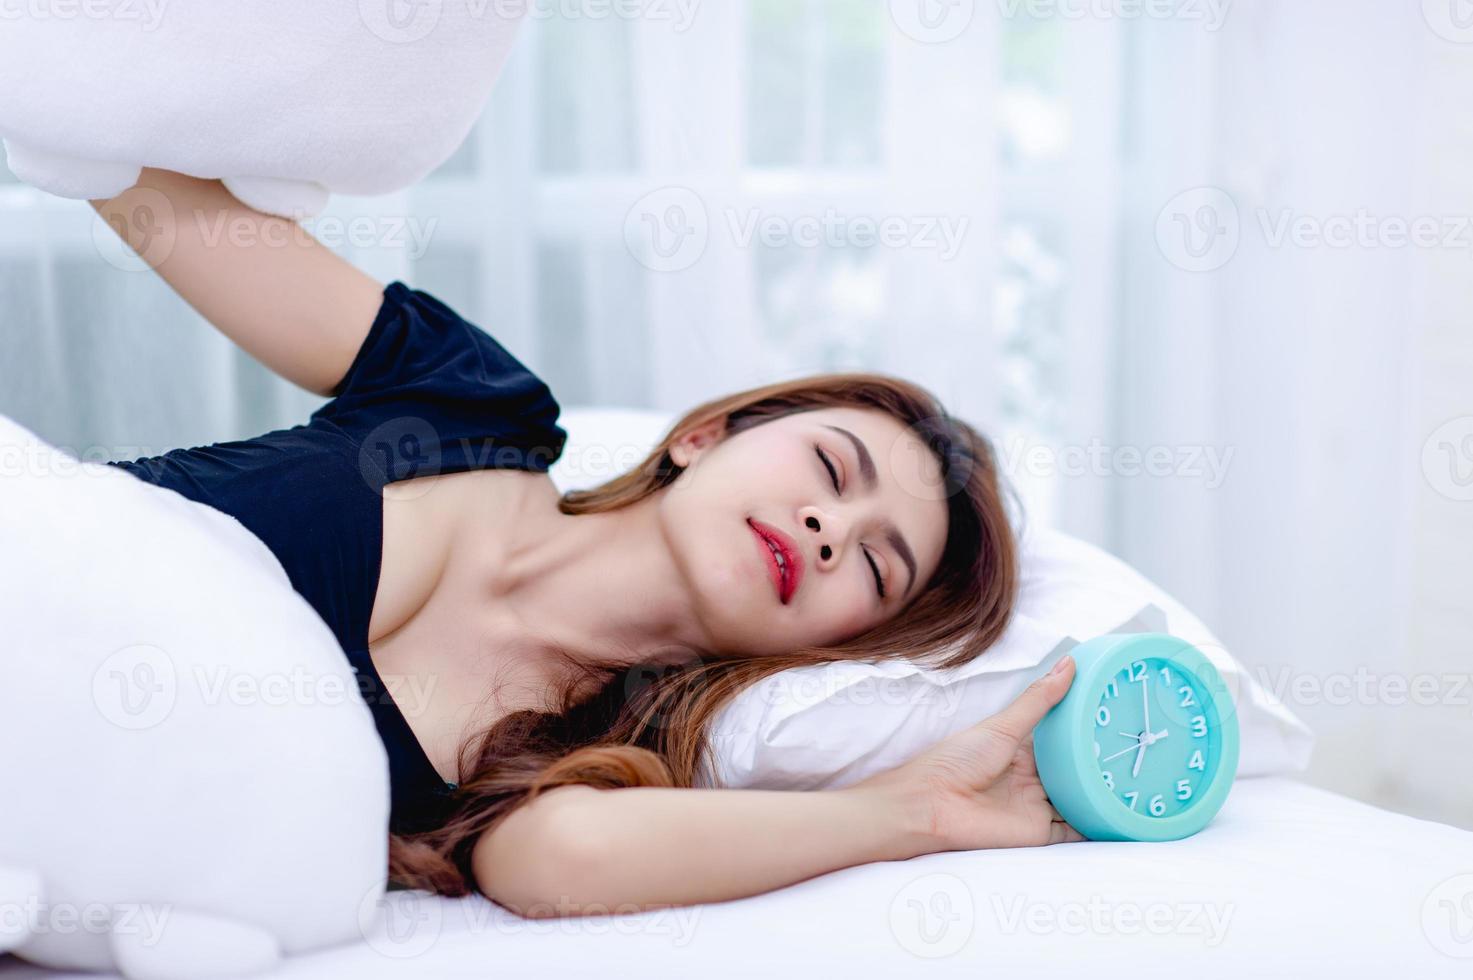 la donna ha tolto il cuscino dall'orecchio mentre al mattino suonava la sveglia. l'idea di svegliarsi per andare al lavoro in orario foto